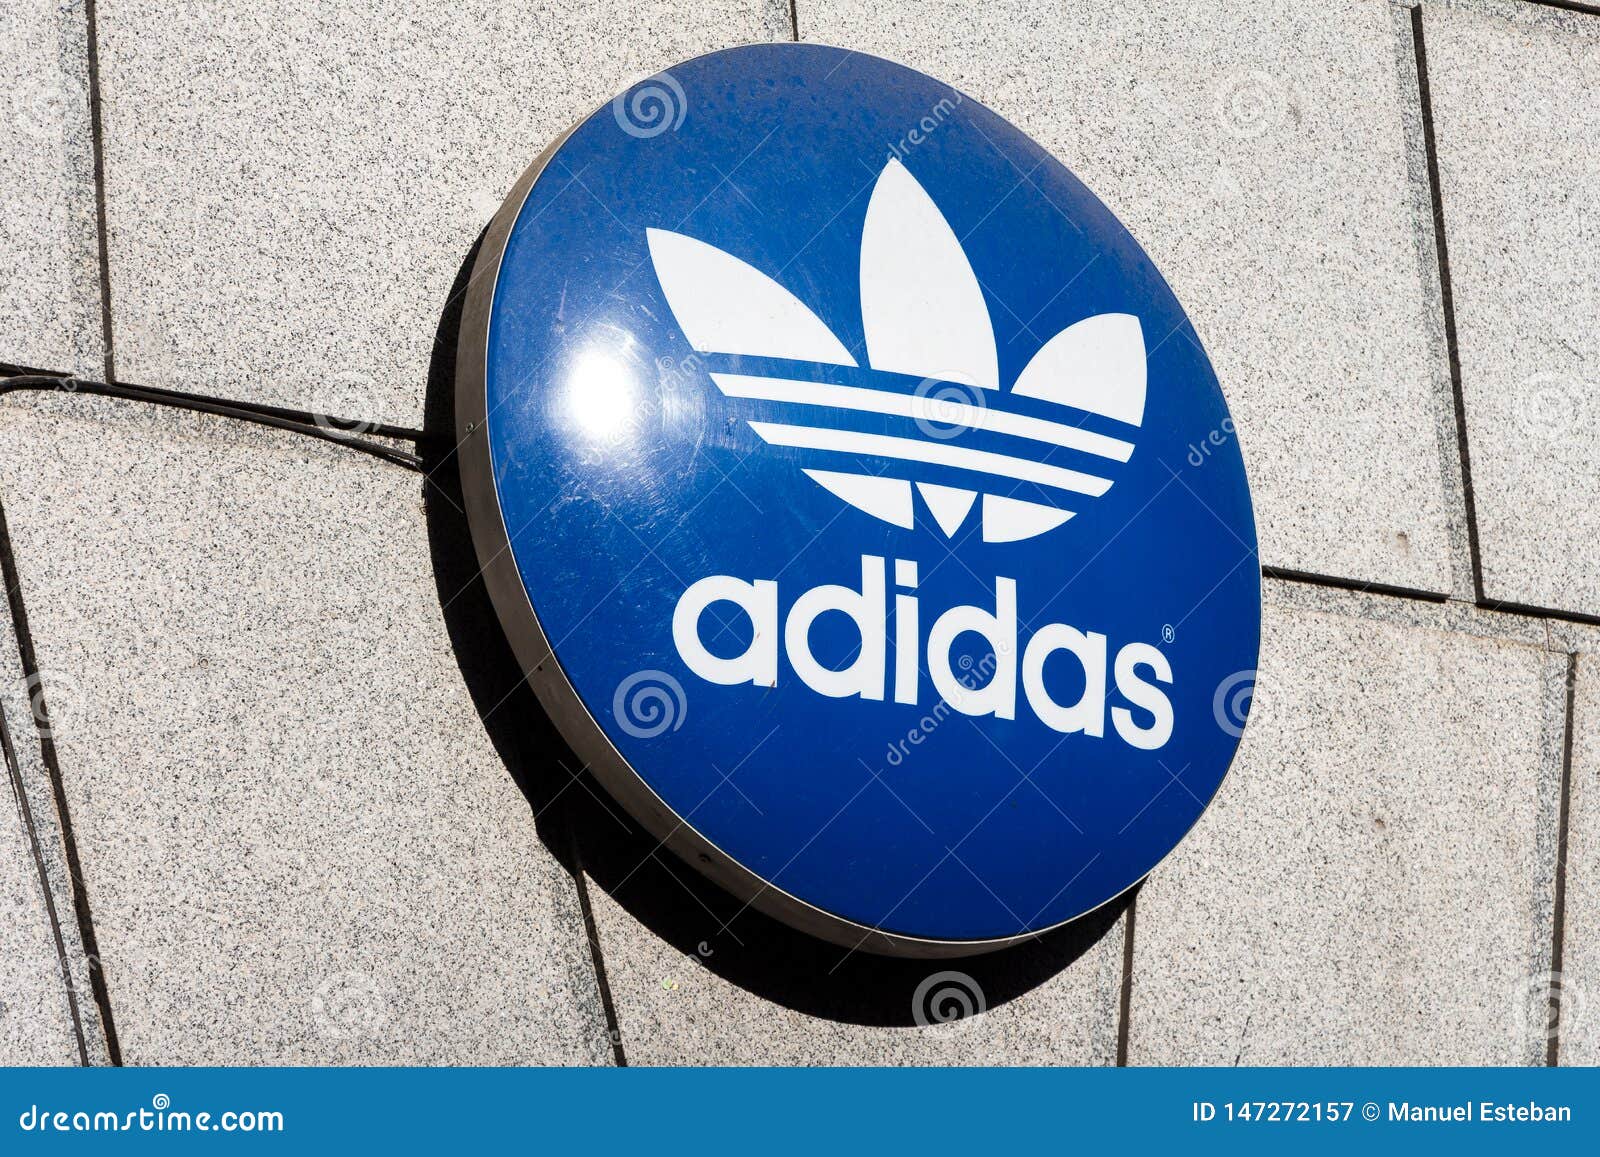 adidas 2019 logo